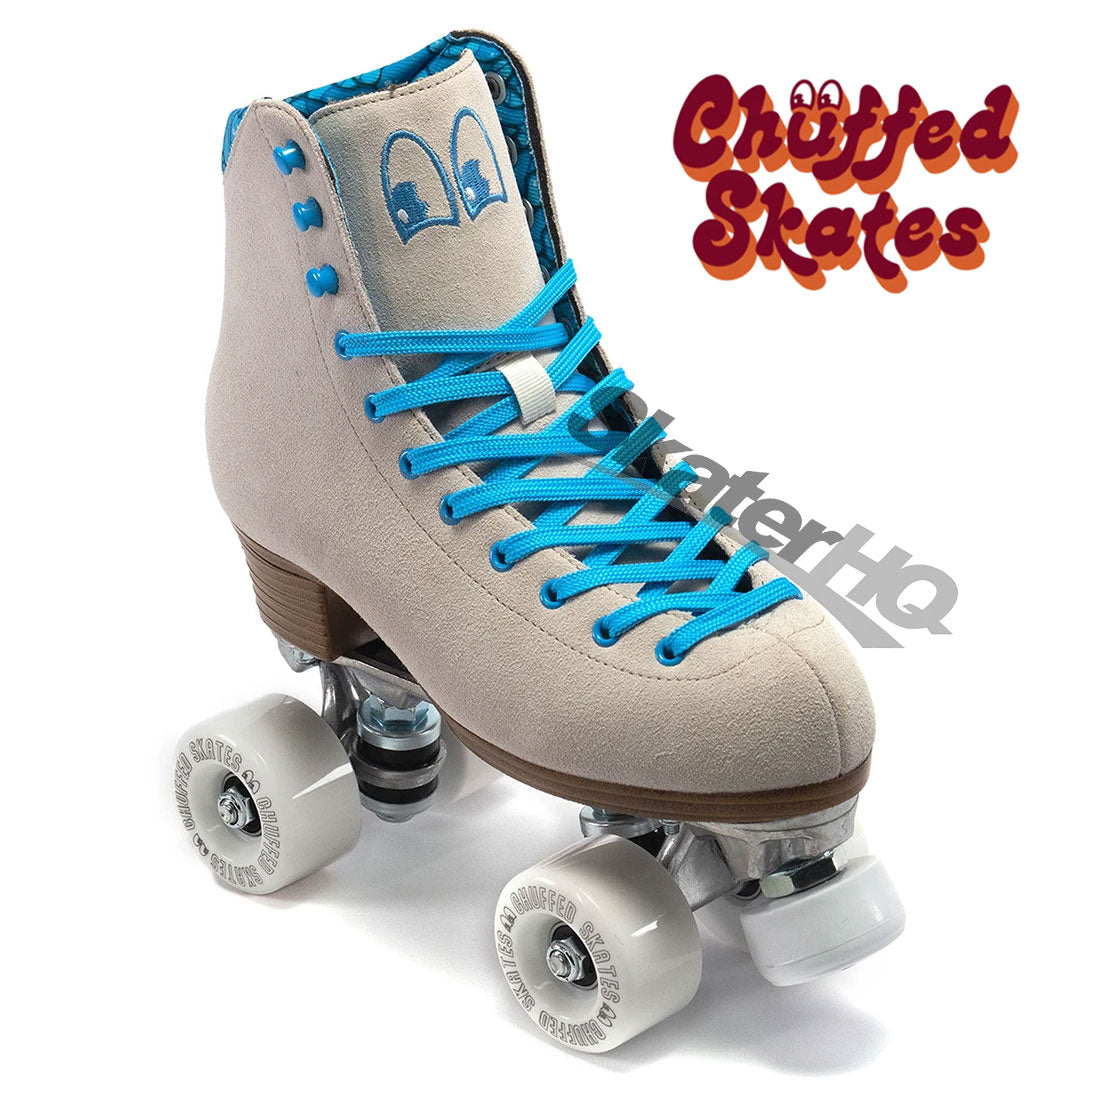 Chuffed Crew Bowzer Grey 7US Roller Skates